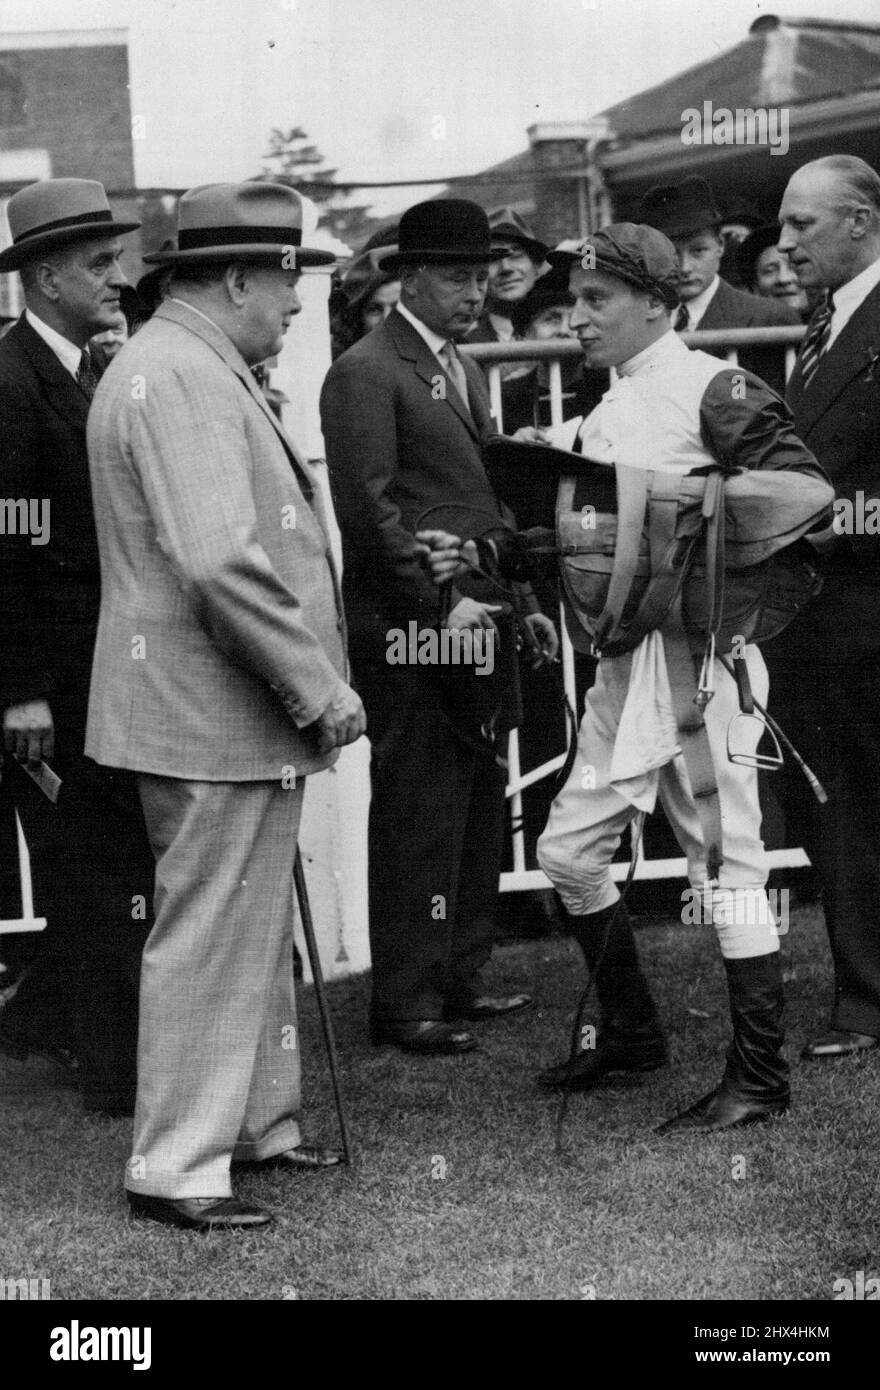 Rouing à Ascot - M. Winston Churchill félicite Hawcroft, son jockey, après qu'il ait gagné les enjeux de Ribblesdale sur le «Colonist 11» Centre de M. Churchill est le duc de Norfolk. 16 mai 1951. (Photo de Sport & General Press Agency, Limited). Banque D'Images